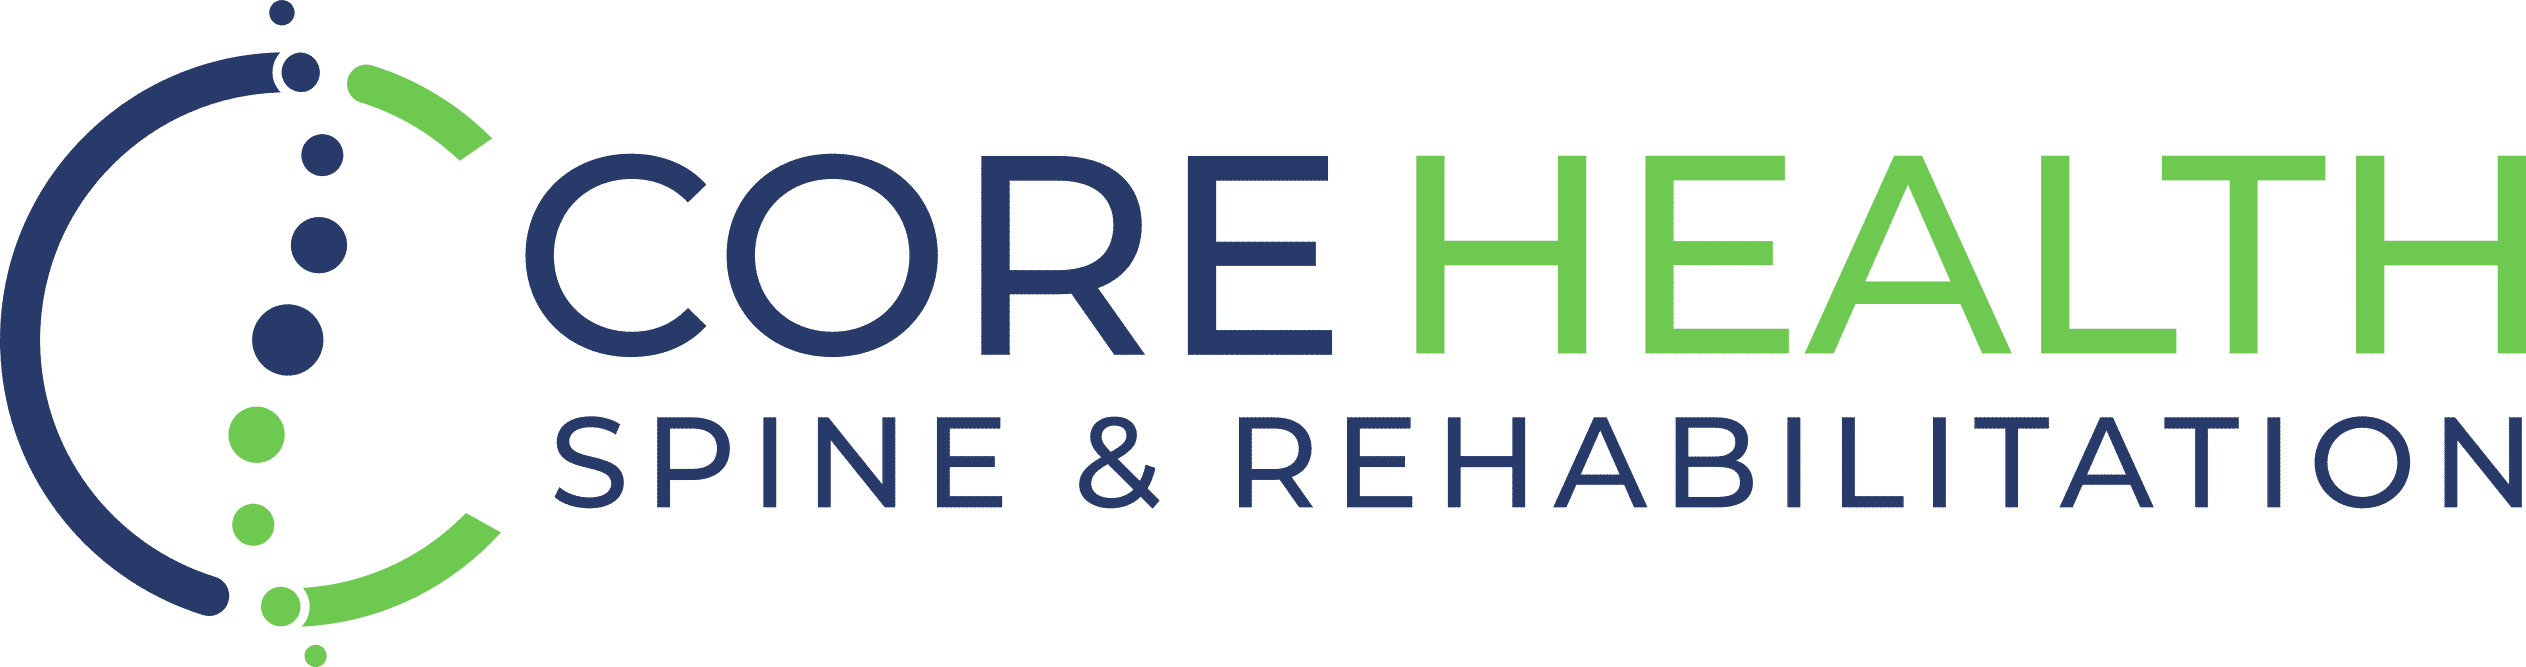 Core Health Spine & Rehabilitation company logo